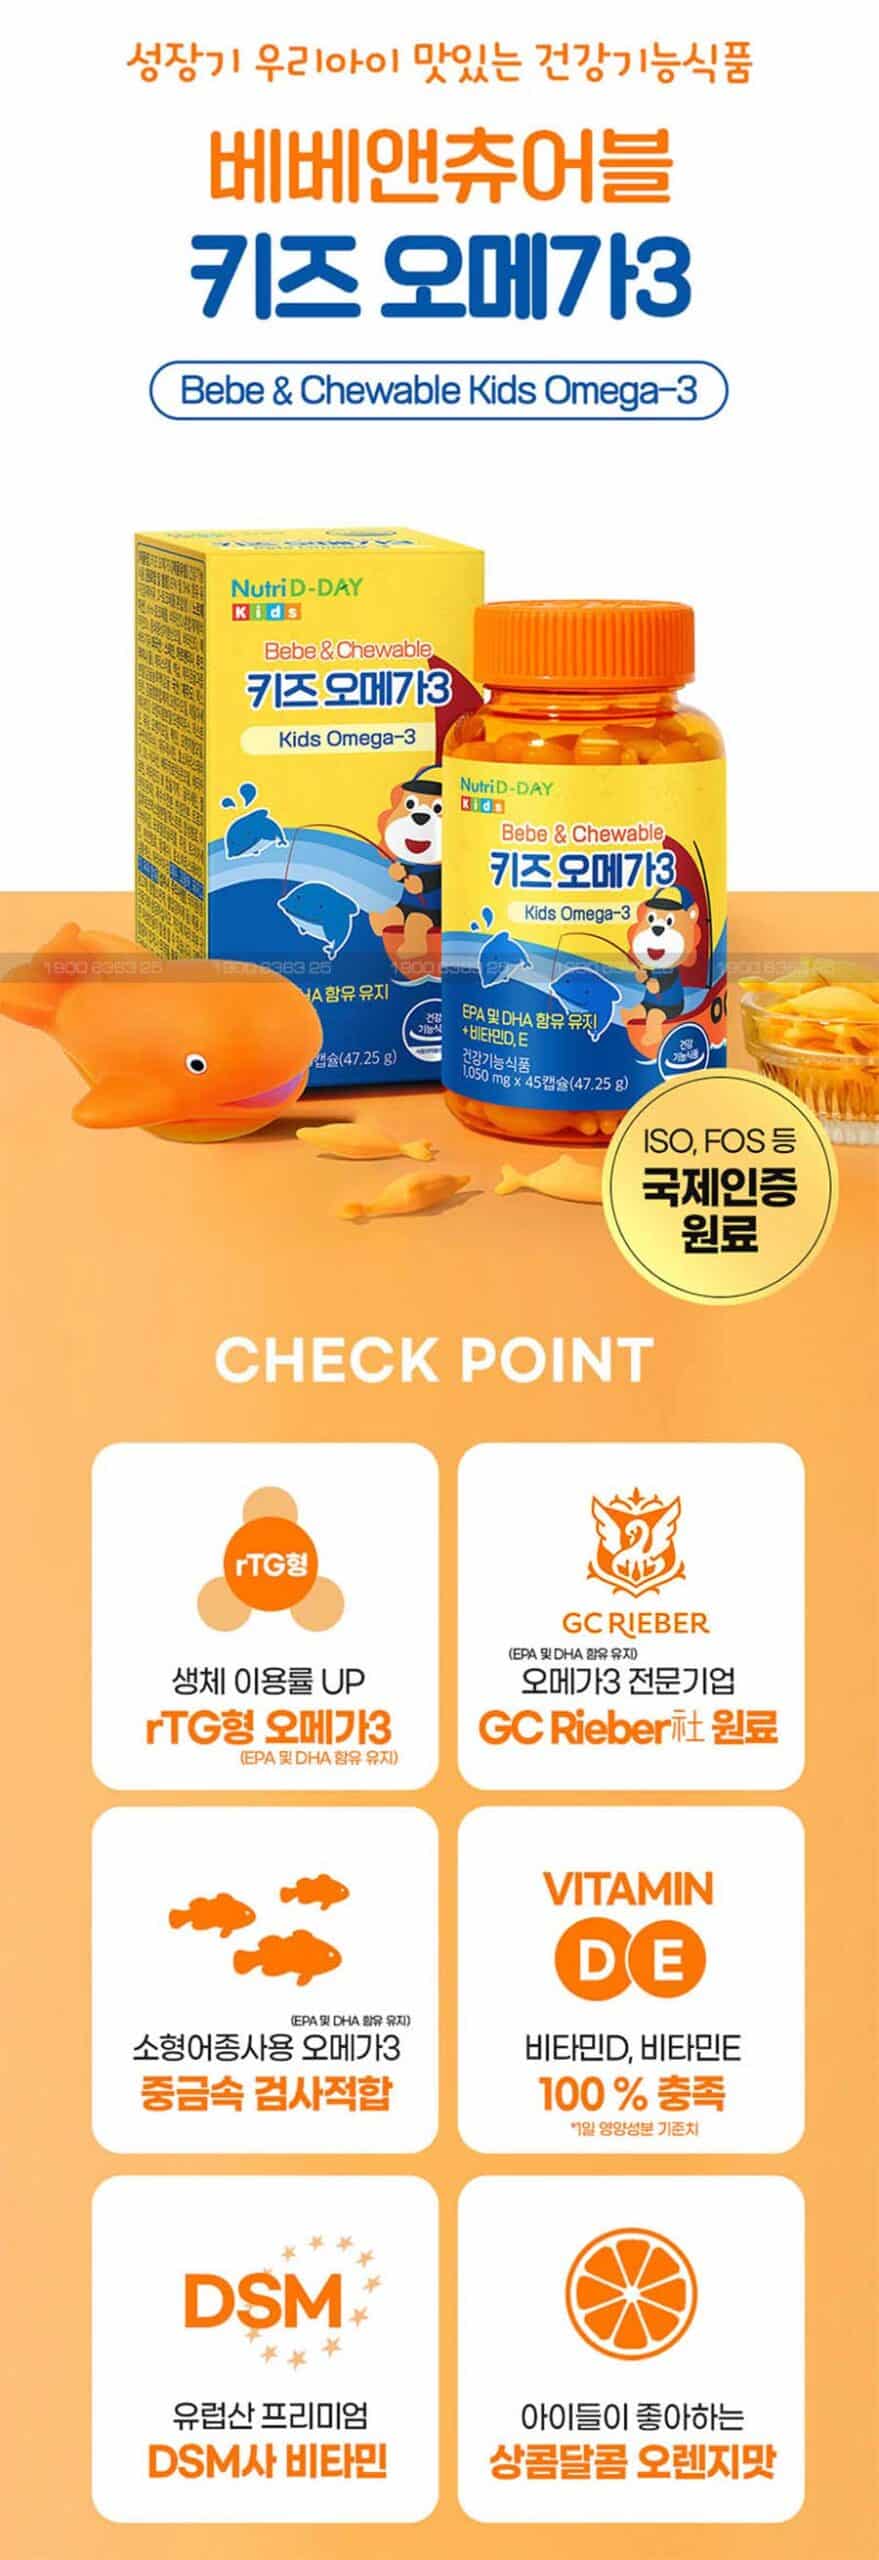 Công dụng của Dầu Cá Omega 3 Nutri D-Day Bebe & Chewable Kids Omega 3 - Dạng Kẹo Dẻo Chuẩn nội địa Hàn Quốc